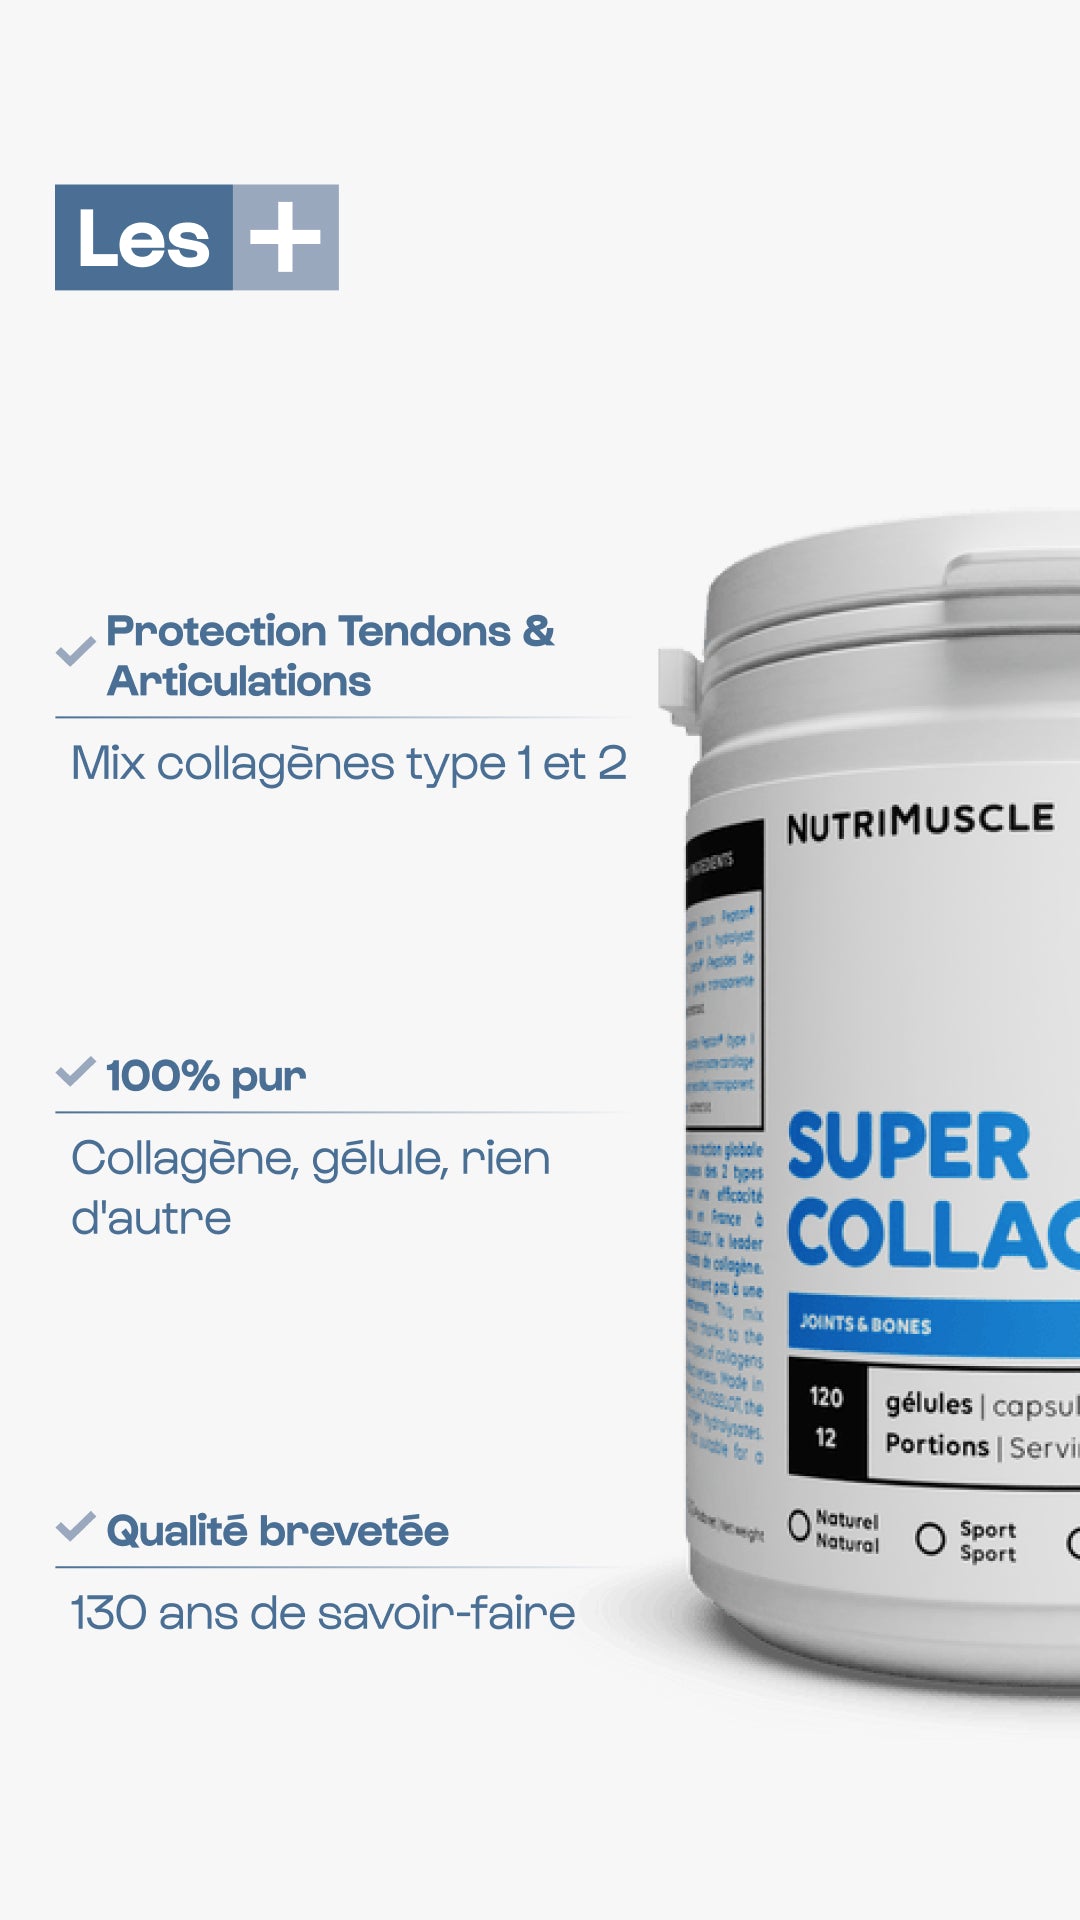 Super Collagen Mix in capsule